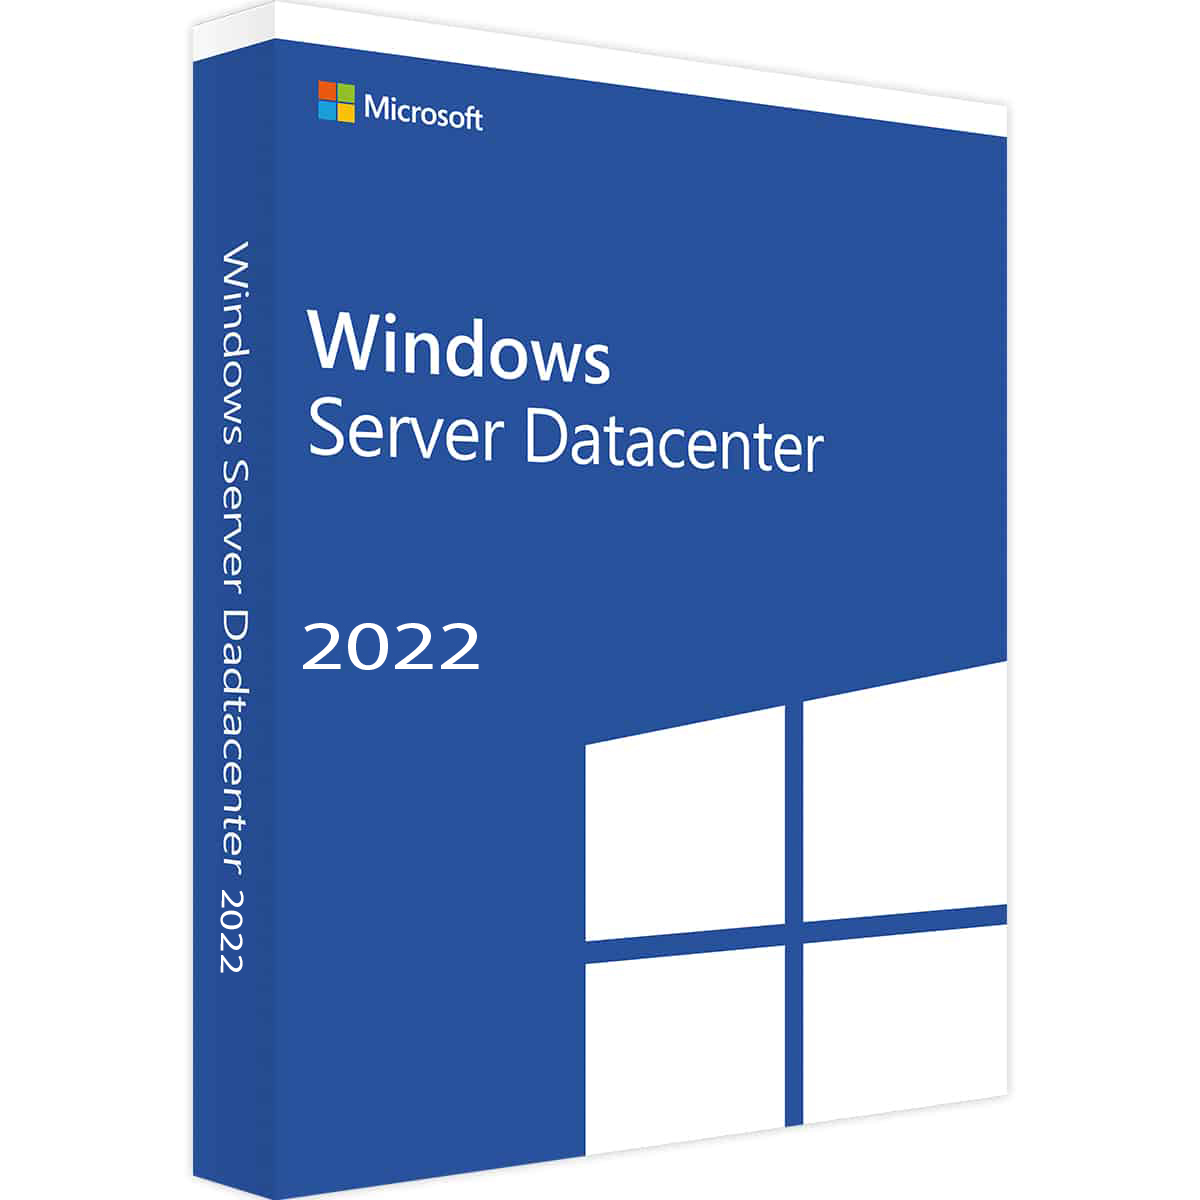 windows server 2022 datacenter download